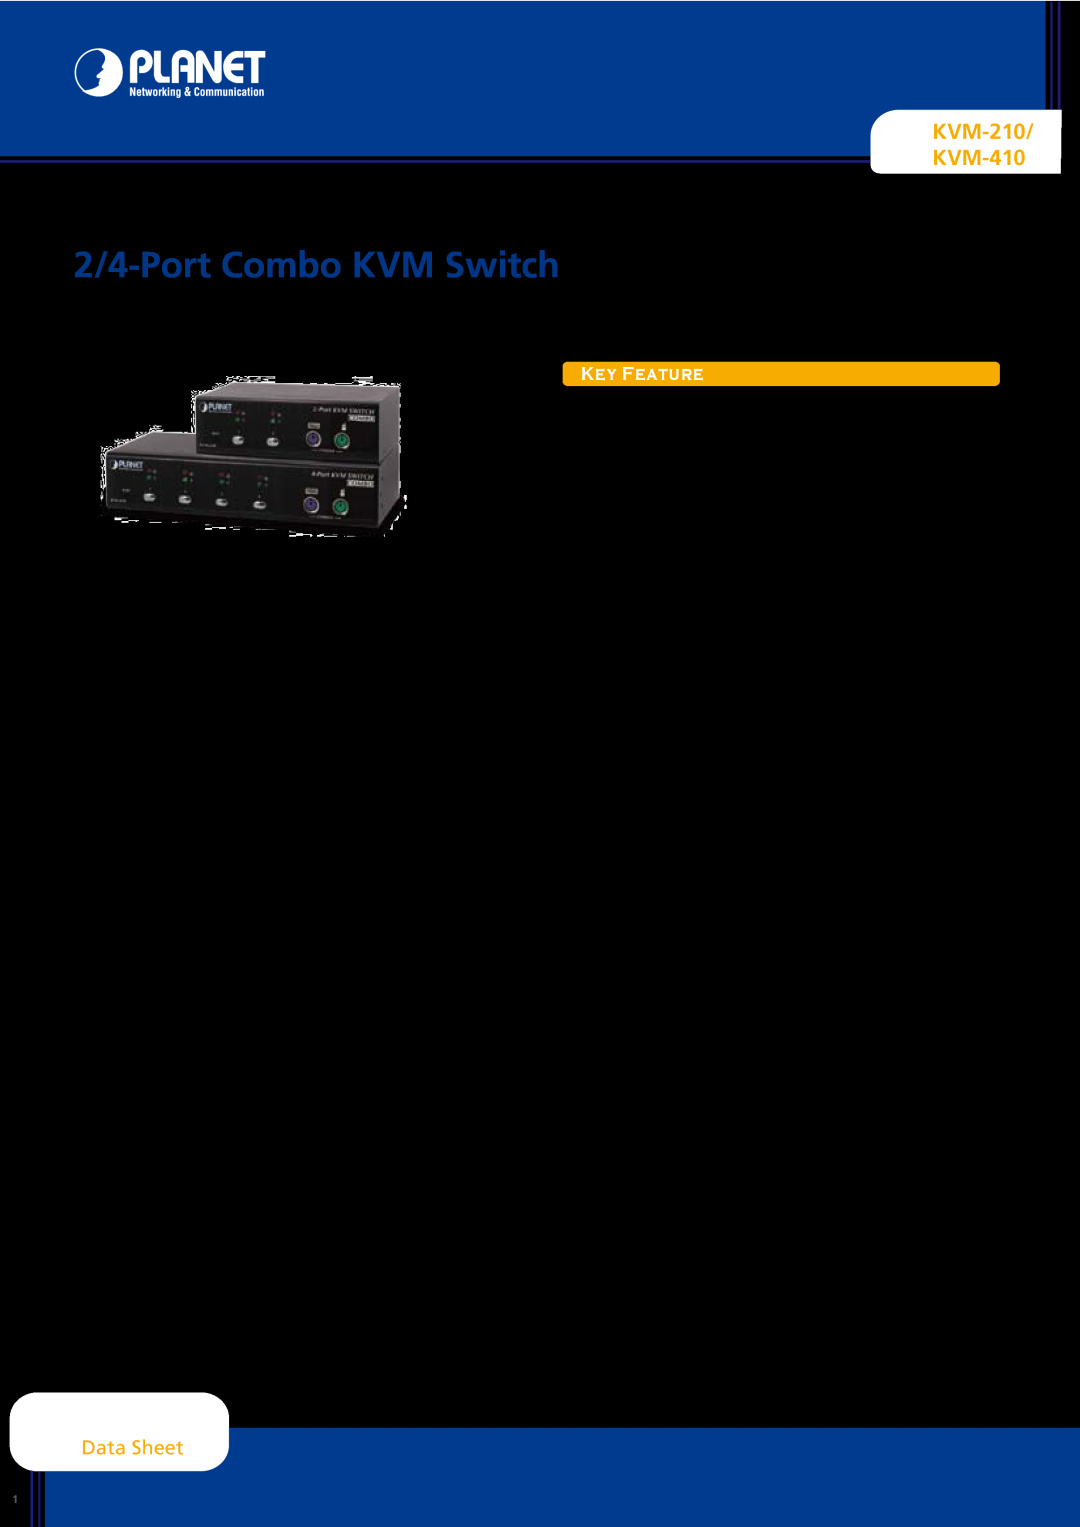 Planet Technology manual KVM-210 KVM-410, Data Sheet, 2/4-Port Combo KVM Switch, Key Feature 